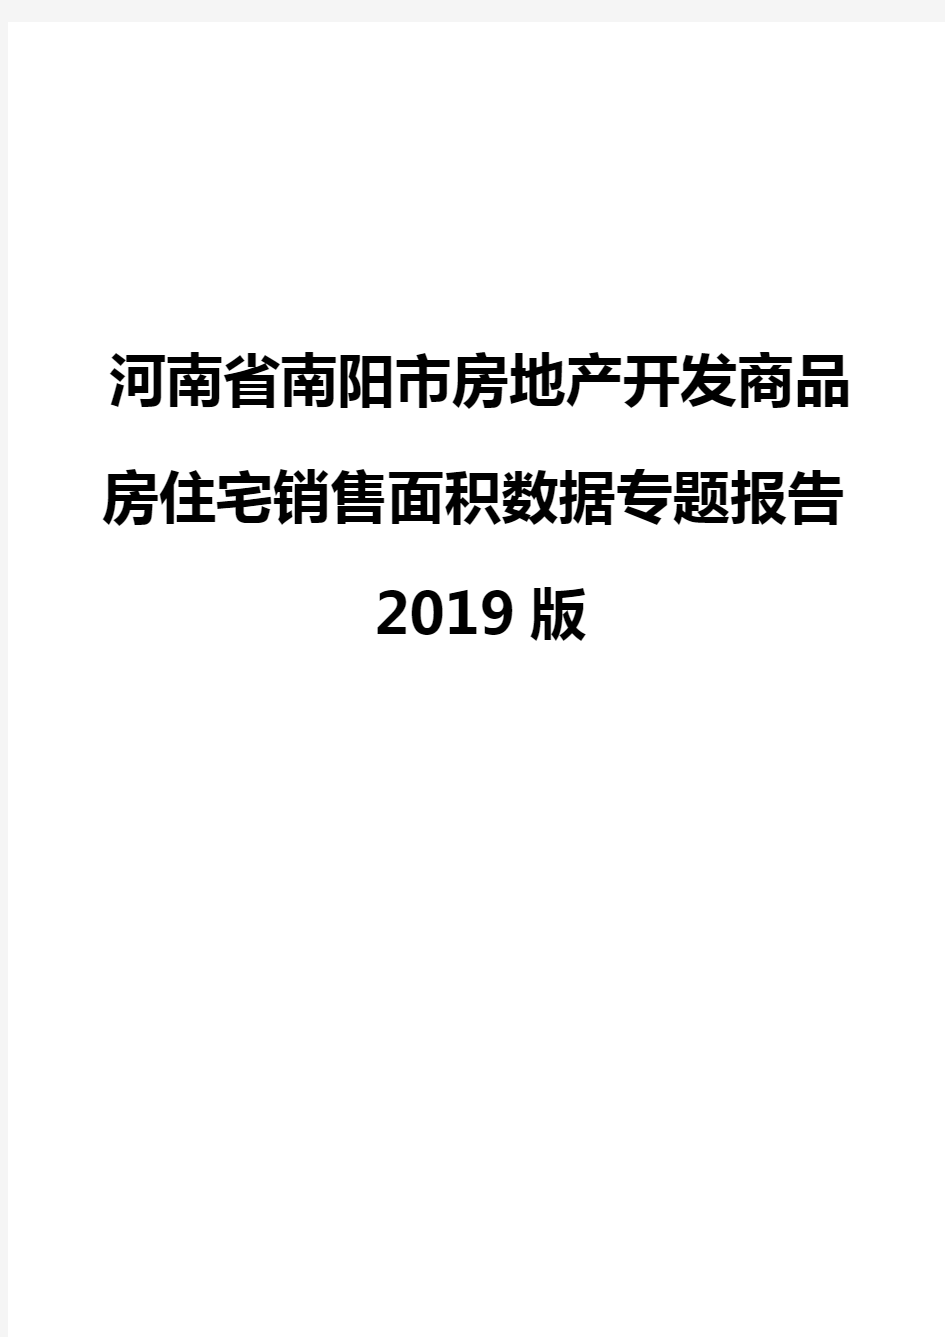 河南省南阳市房地产开发商品房住宅销售面积数据专题报告2019版